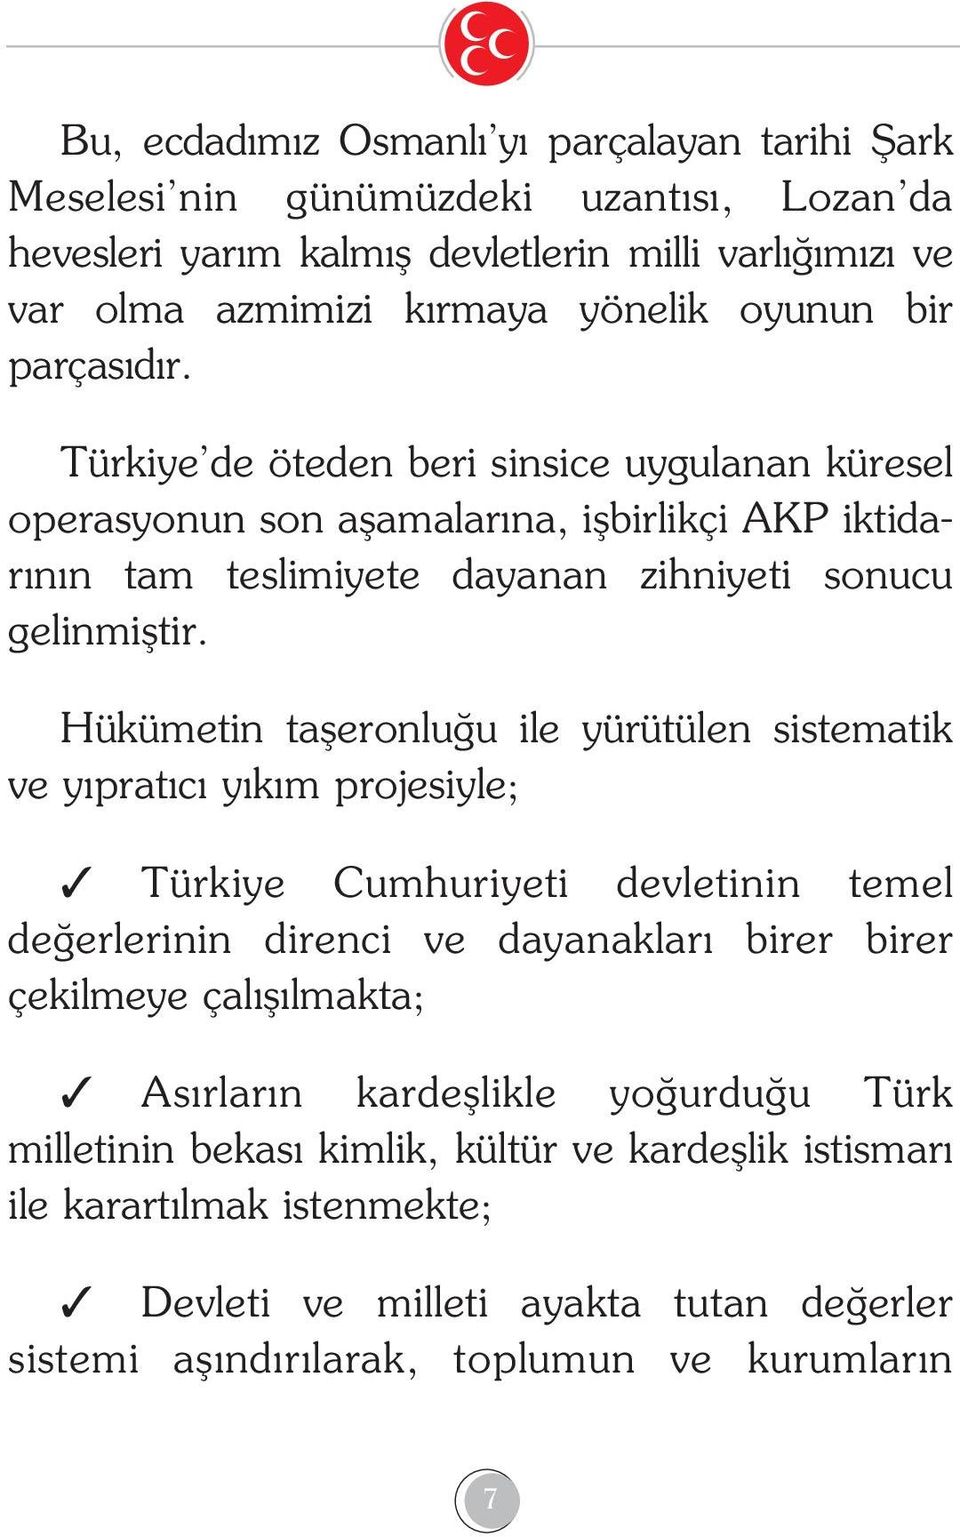 Hükümetin tafleronlu u ile yürütülen sistematik ve y prat c y k m projesiyle; Türkiye Cumhuriyeti devletinin temel de erlerinin direnci ve dayanaklar birer birer çekilmeye çal fl lmakta; As